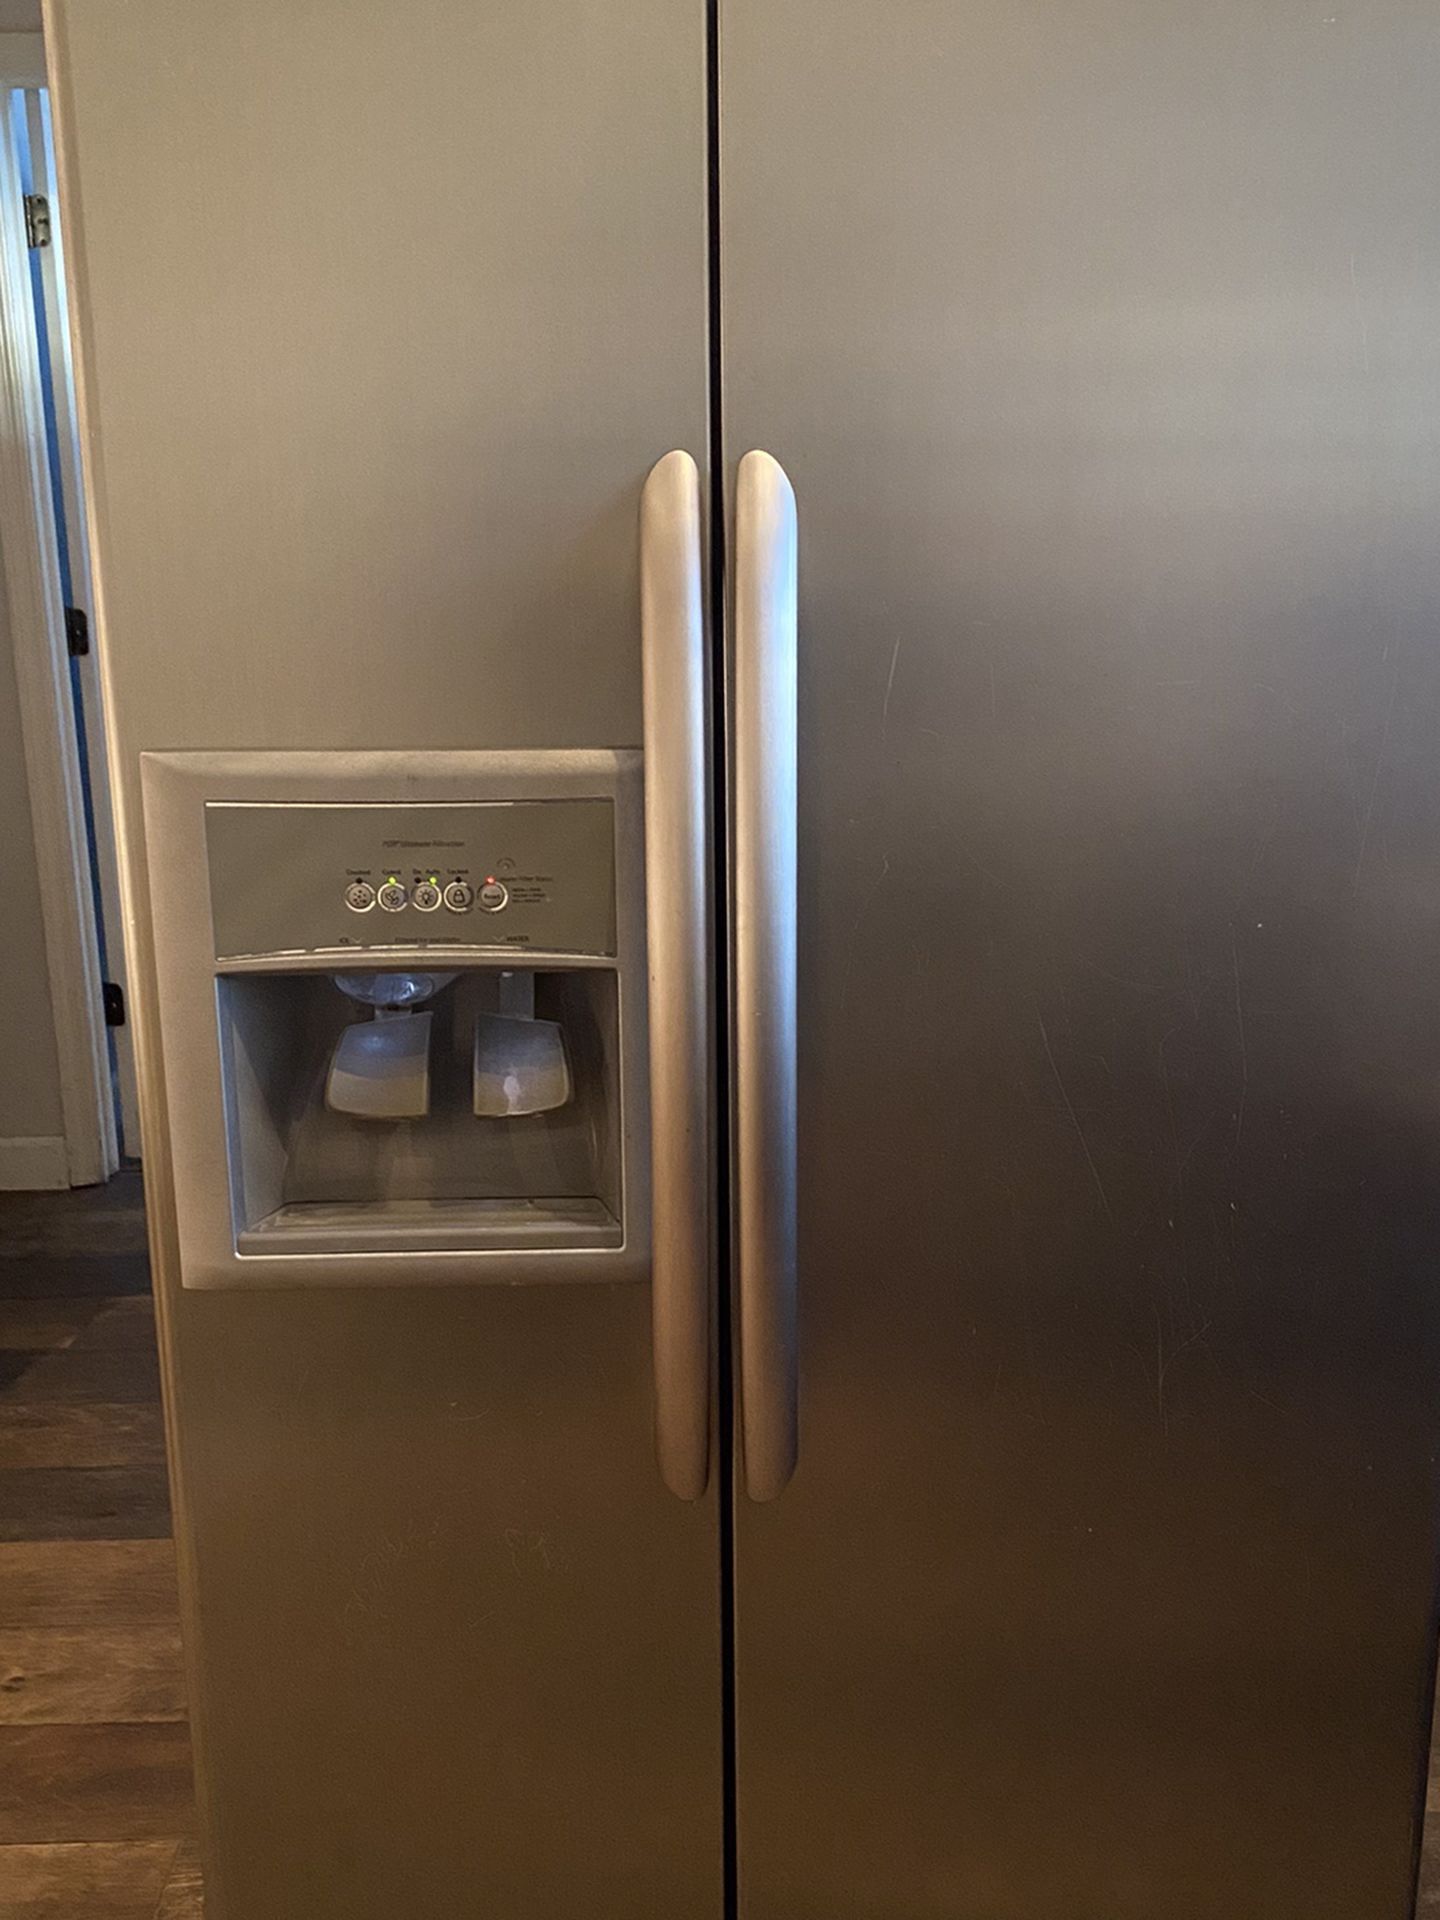 Stainless Steel Kenmore Elite Refrigerator